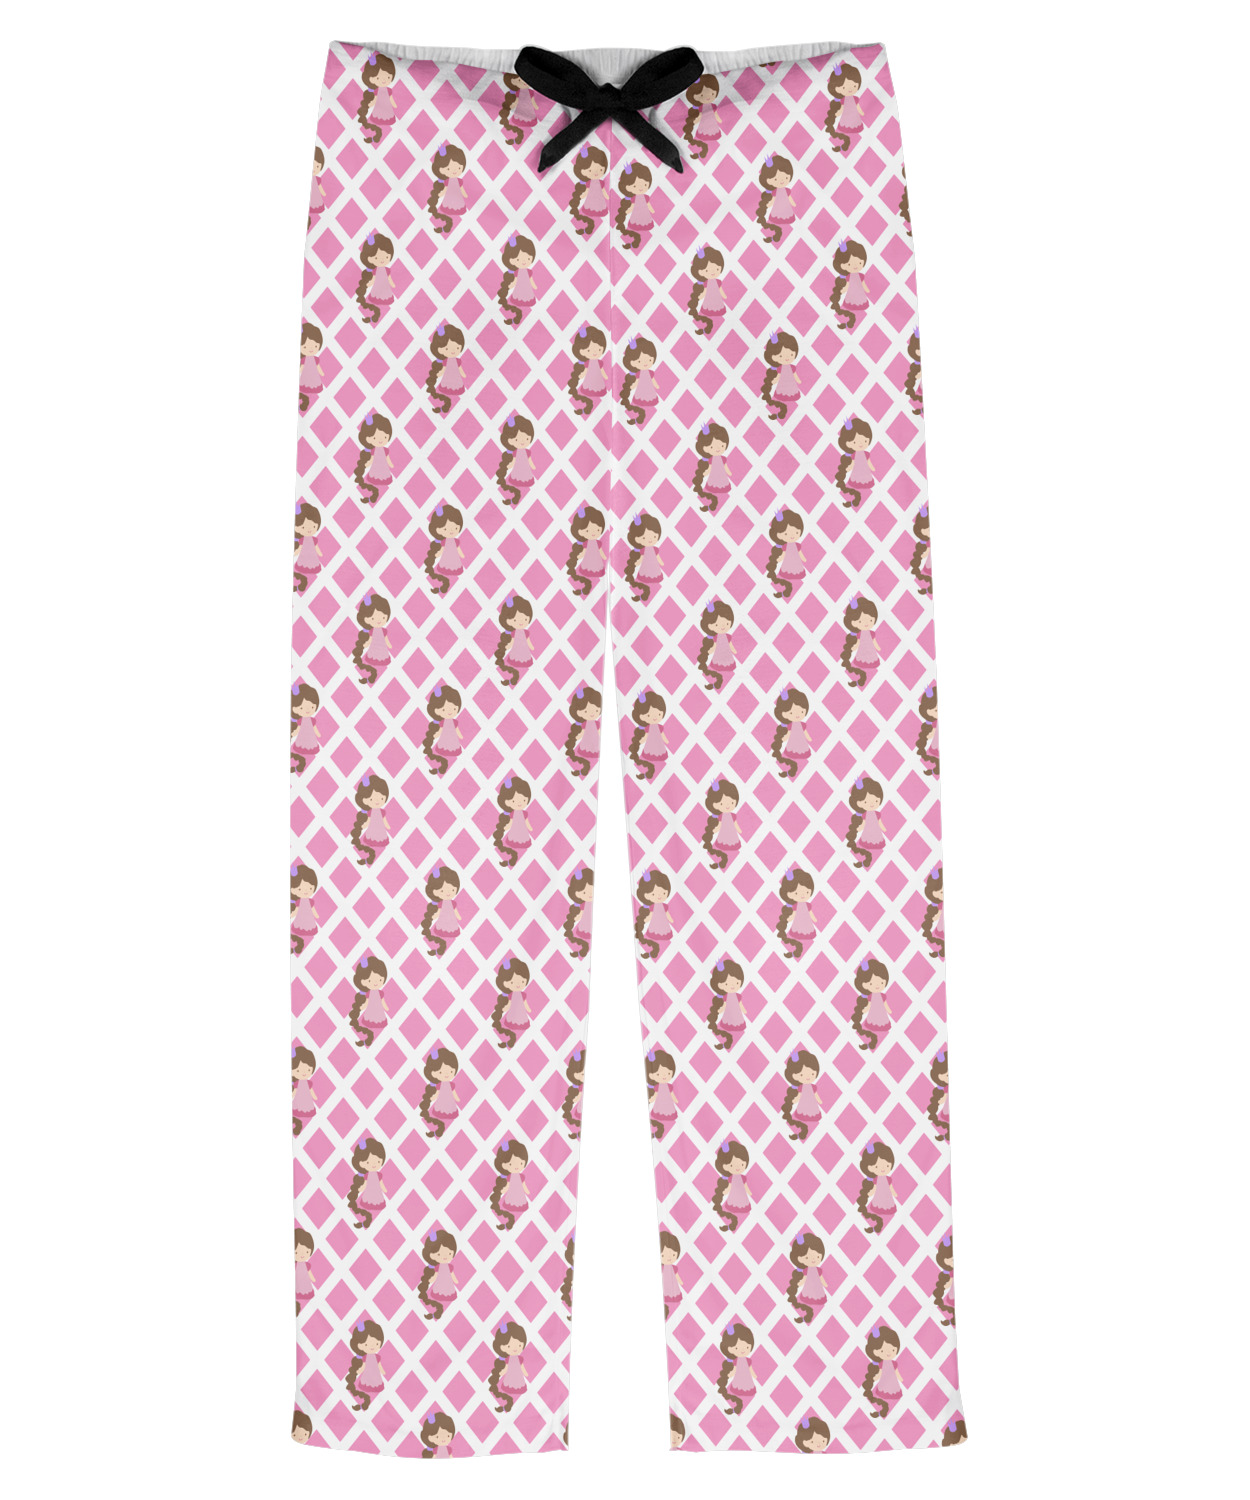 Princess & Diamond Print Mens Pajama Pants - 2XL (Personalized ...